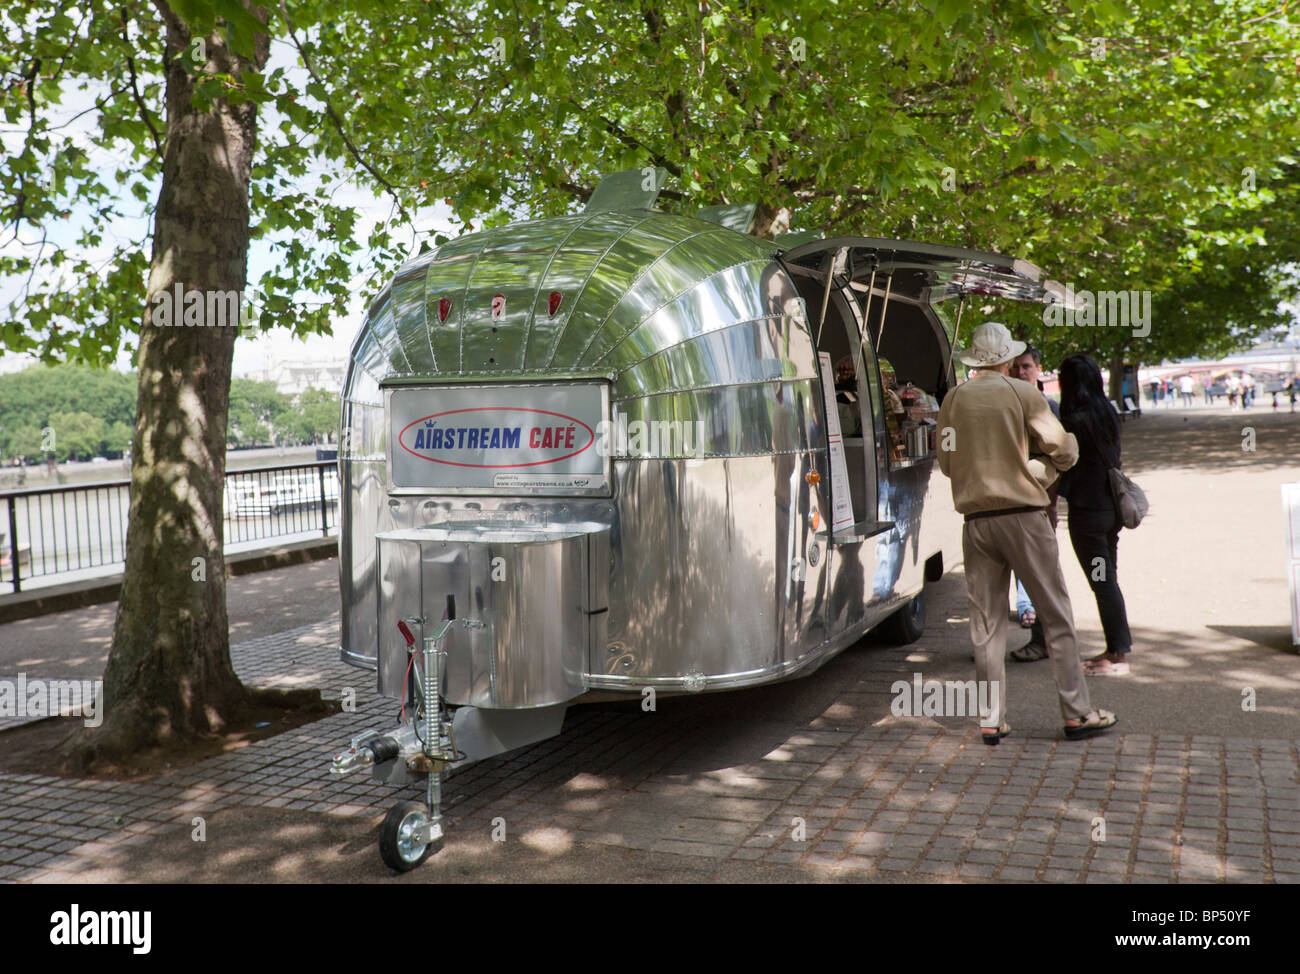 Mobile roulotte Airstream utilizzato come un caffè bar, sulla riva sud del fiume Tamigi Londra Foto Stock